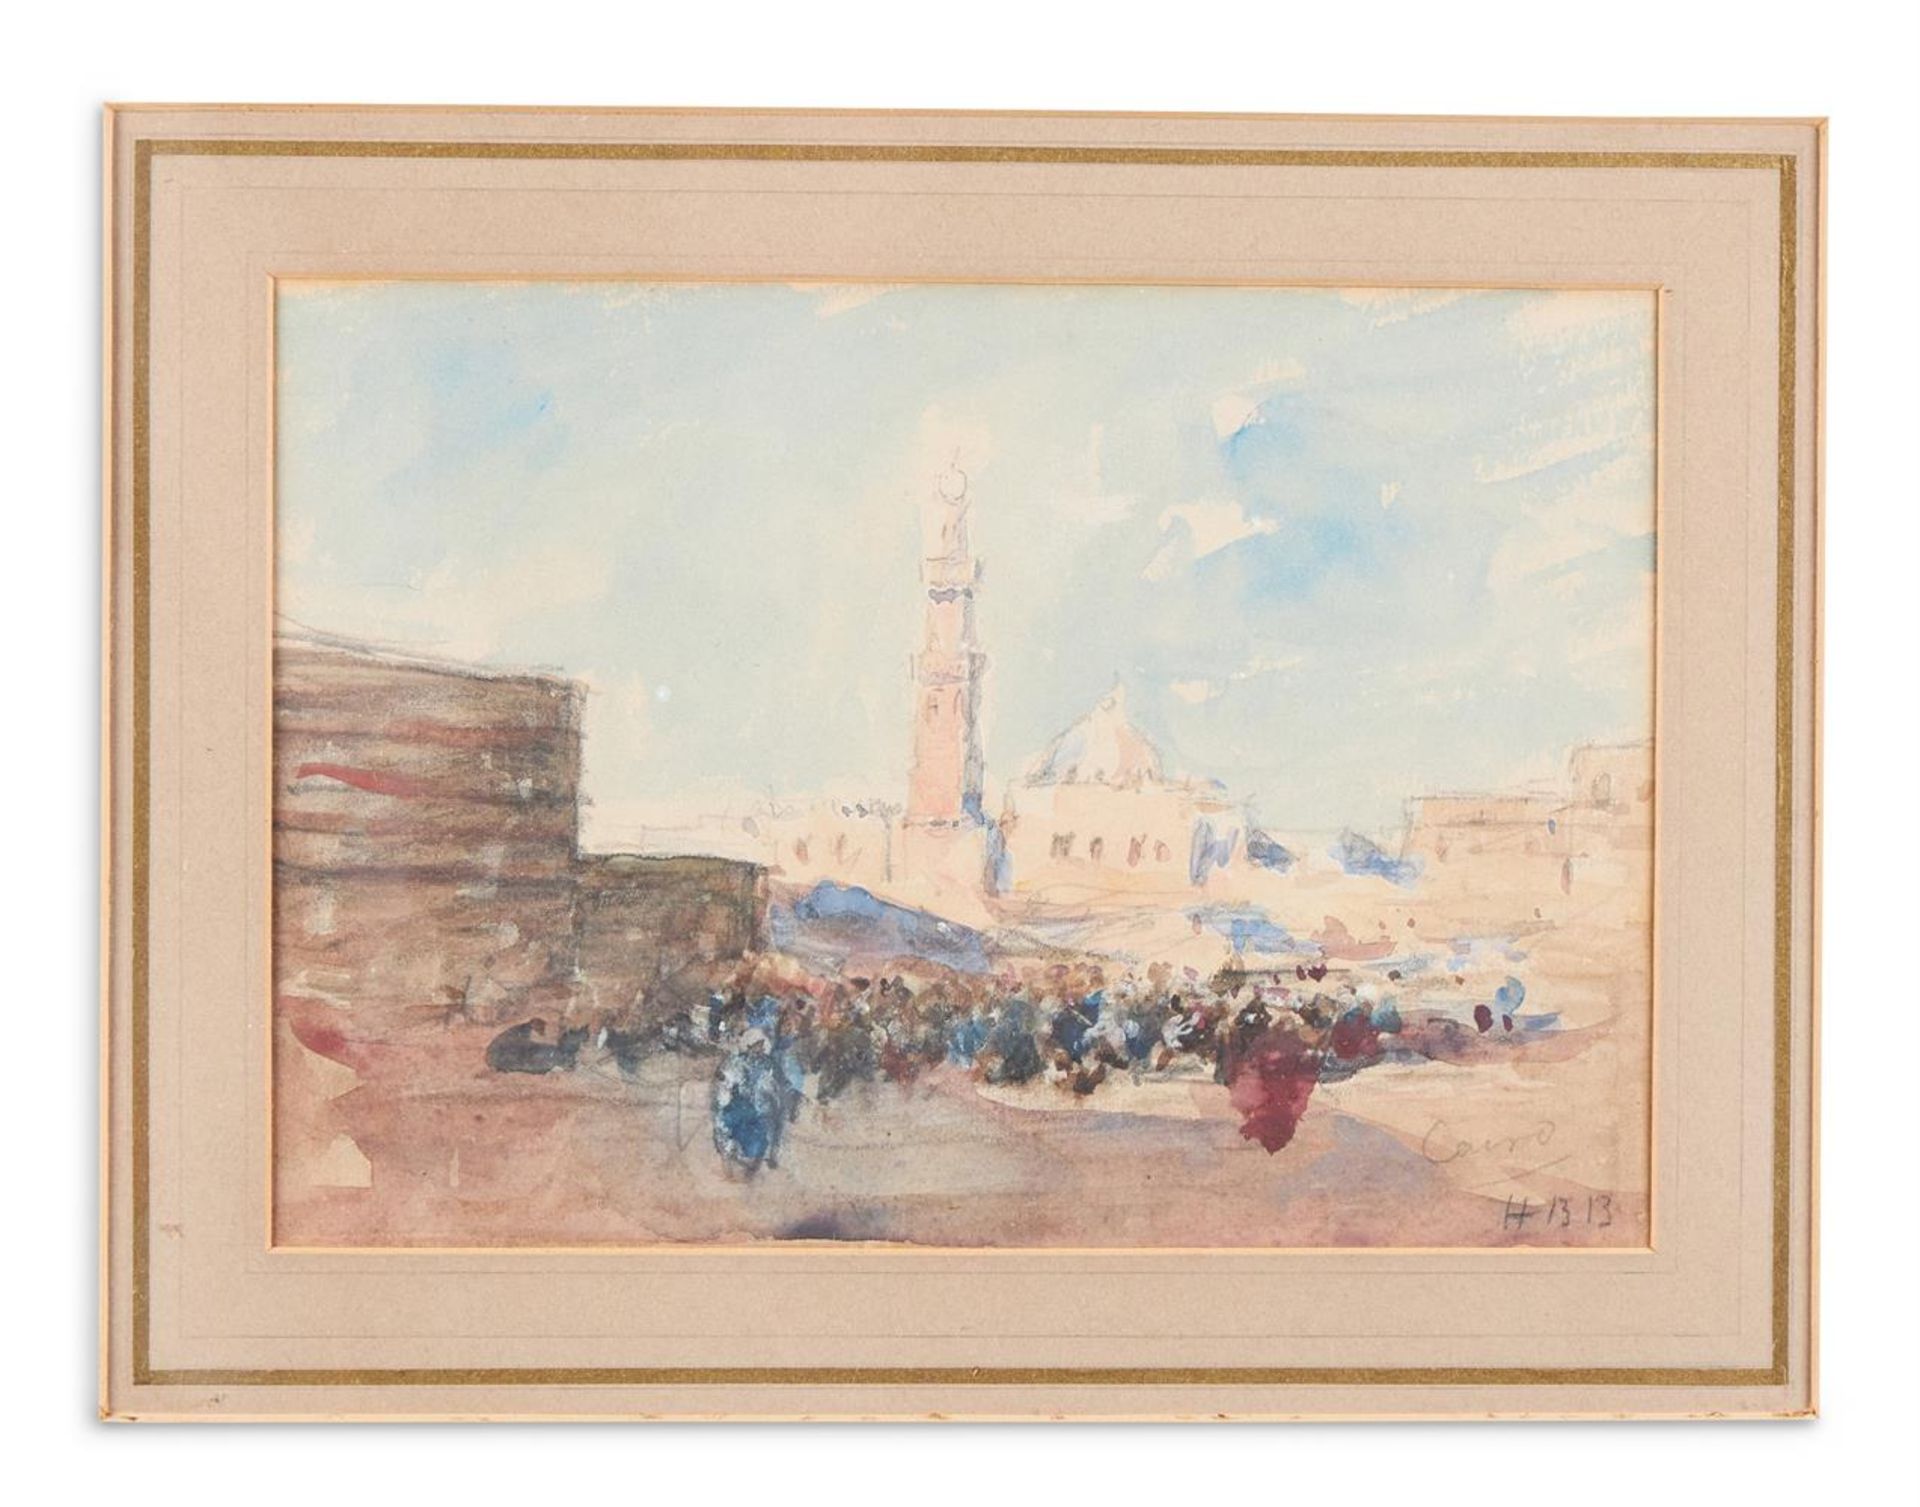 HERCULES BRABAZON BRABAZON (FRENCH 1821-1906), CAIRO - Bild 2 aus 4